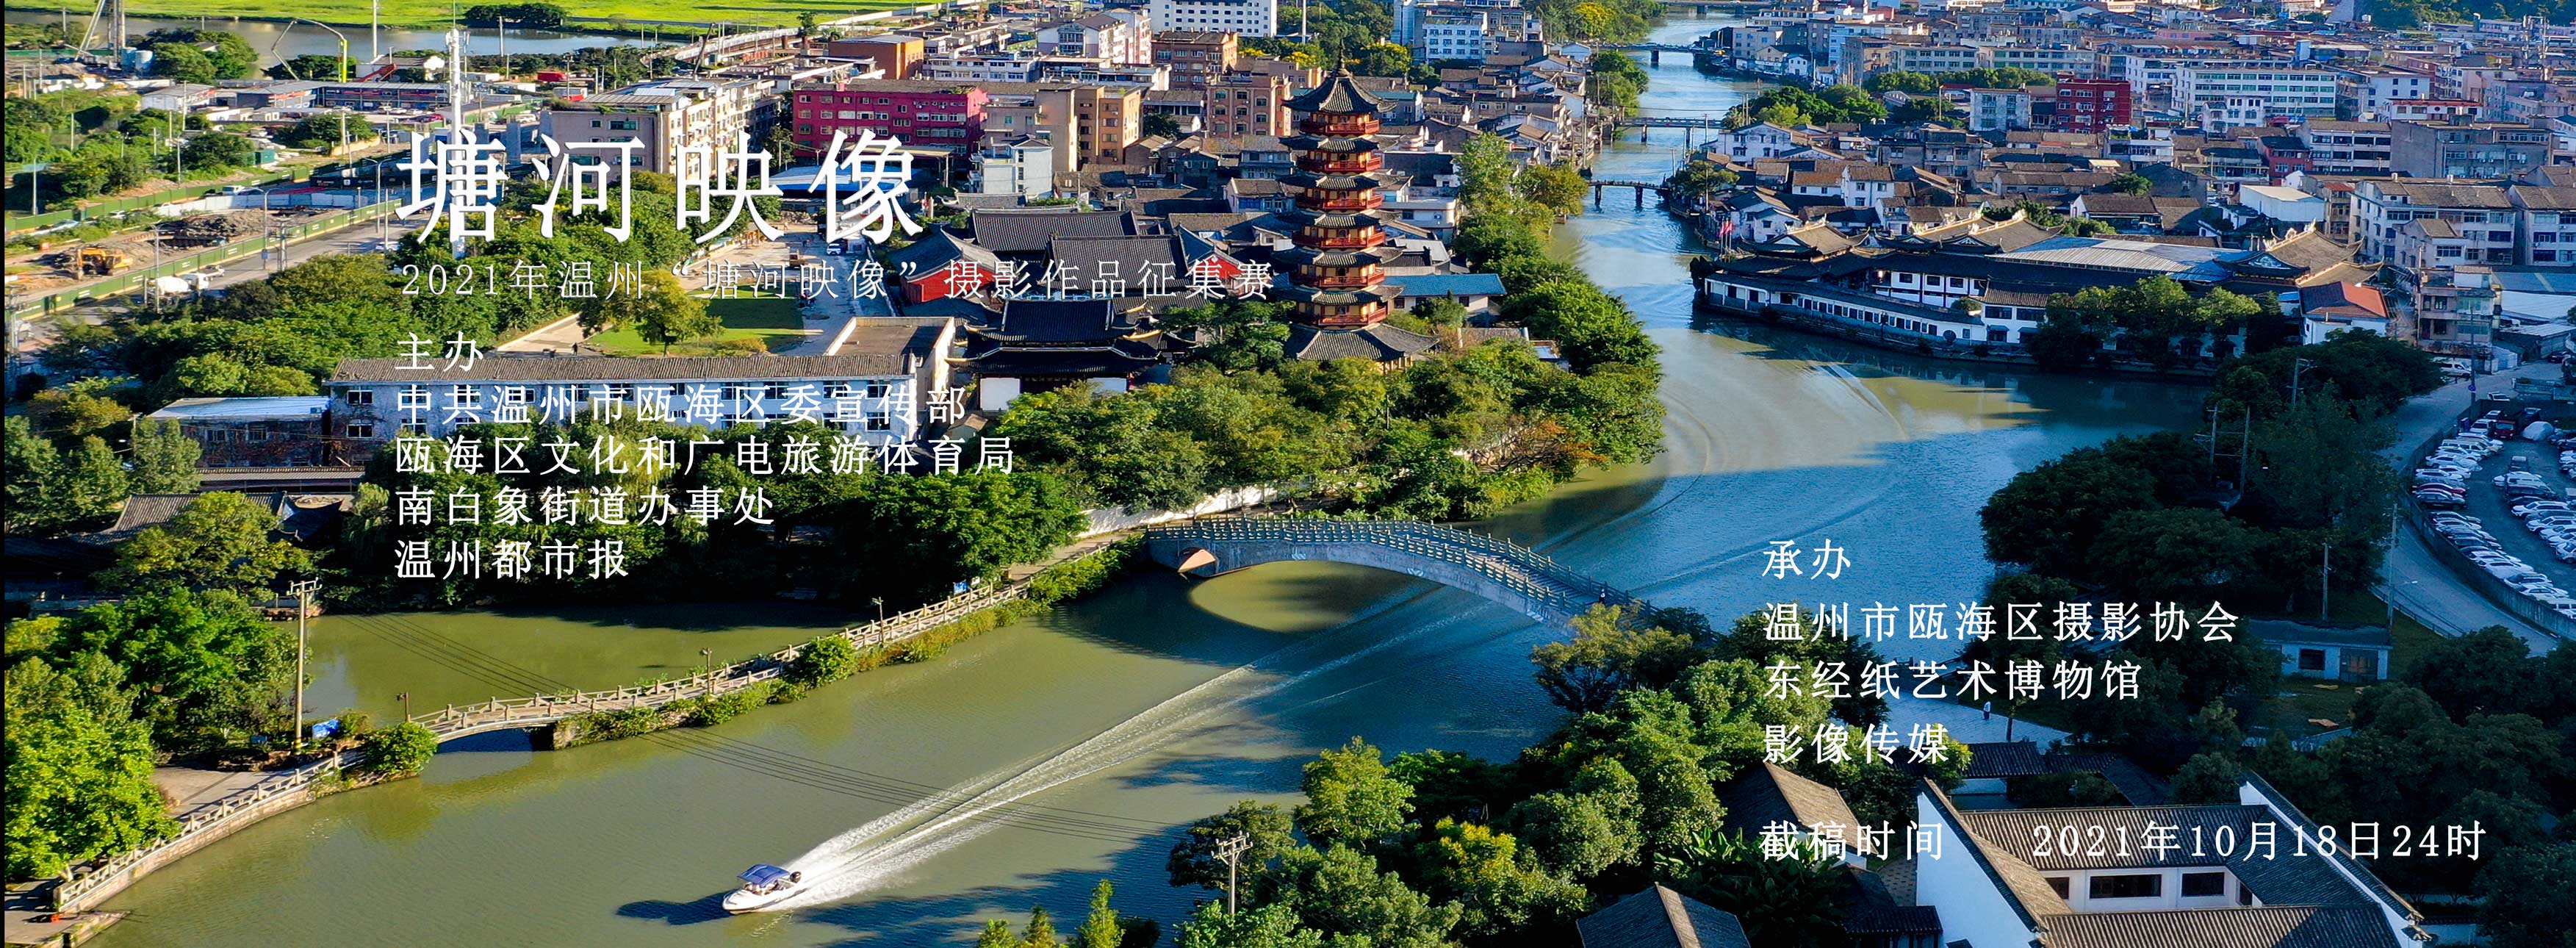 2021年温州“塘河映像”摄影作品征集赛